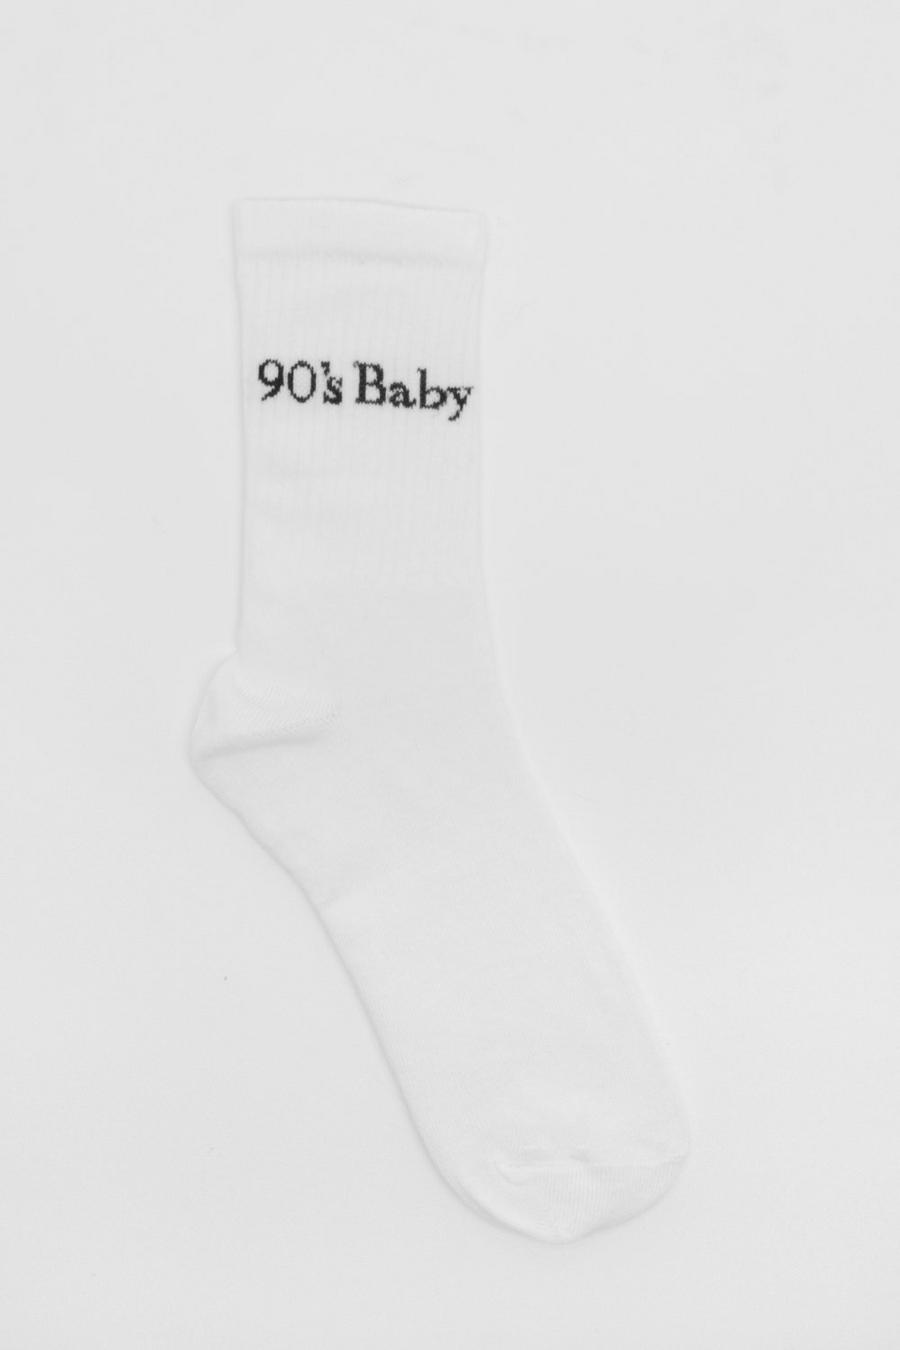 Calzini sportivi per bebè anni ‘90 bianchi a coste, White